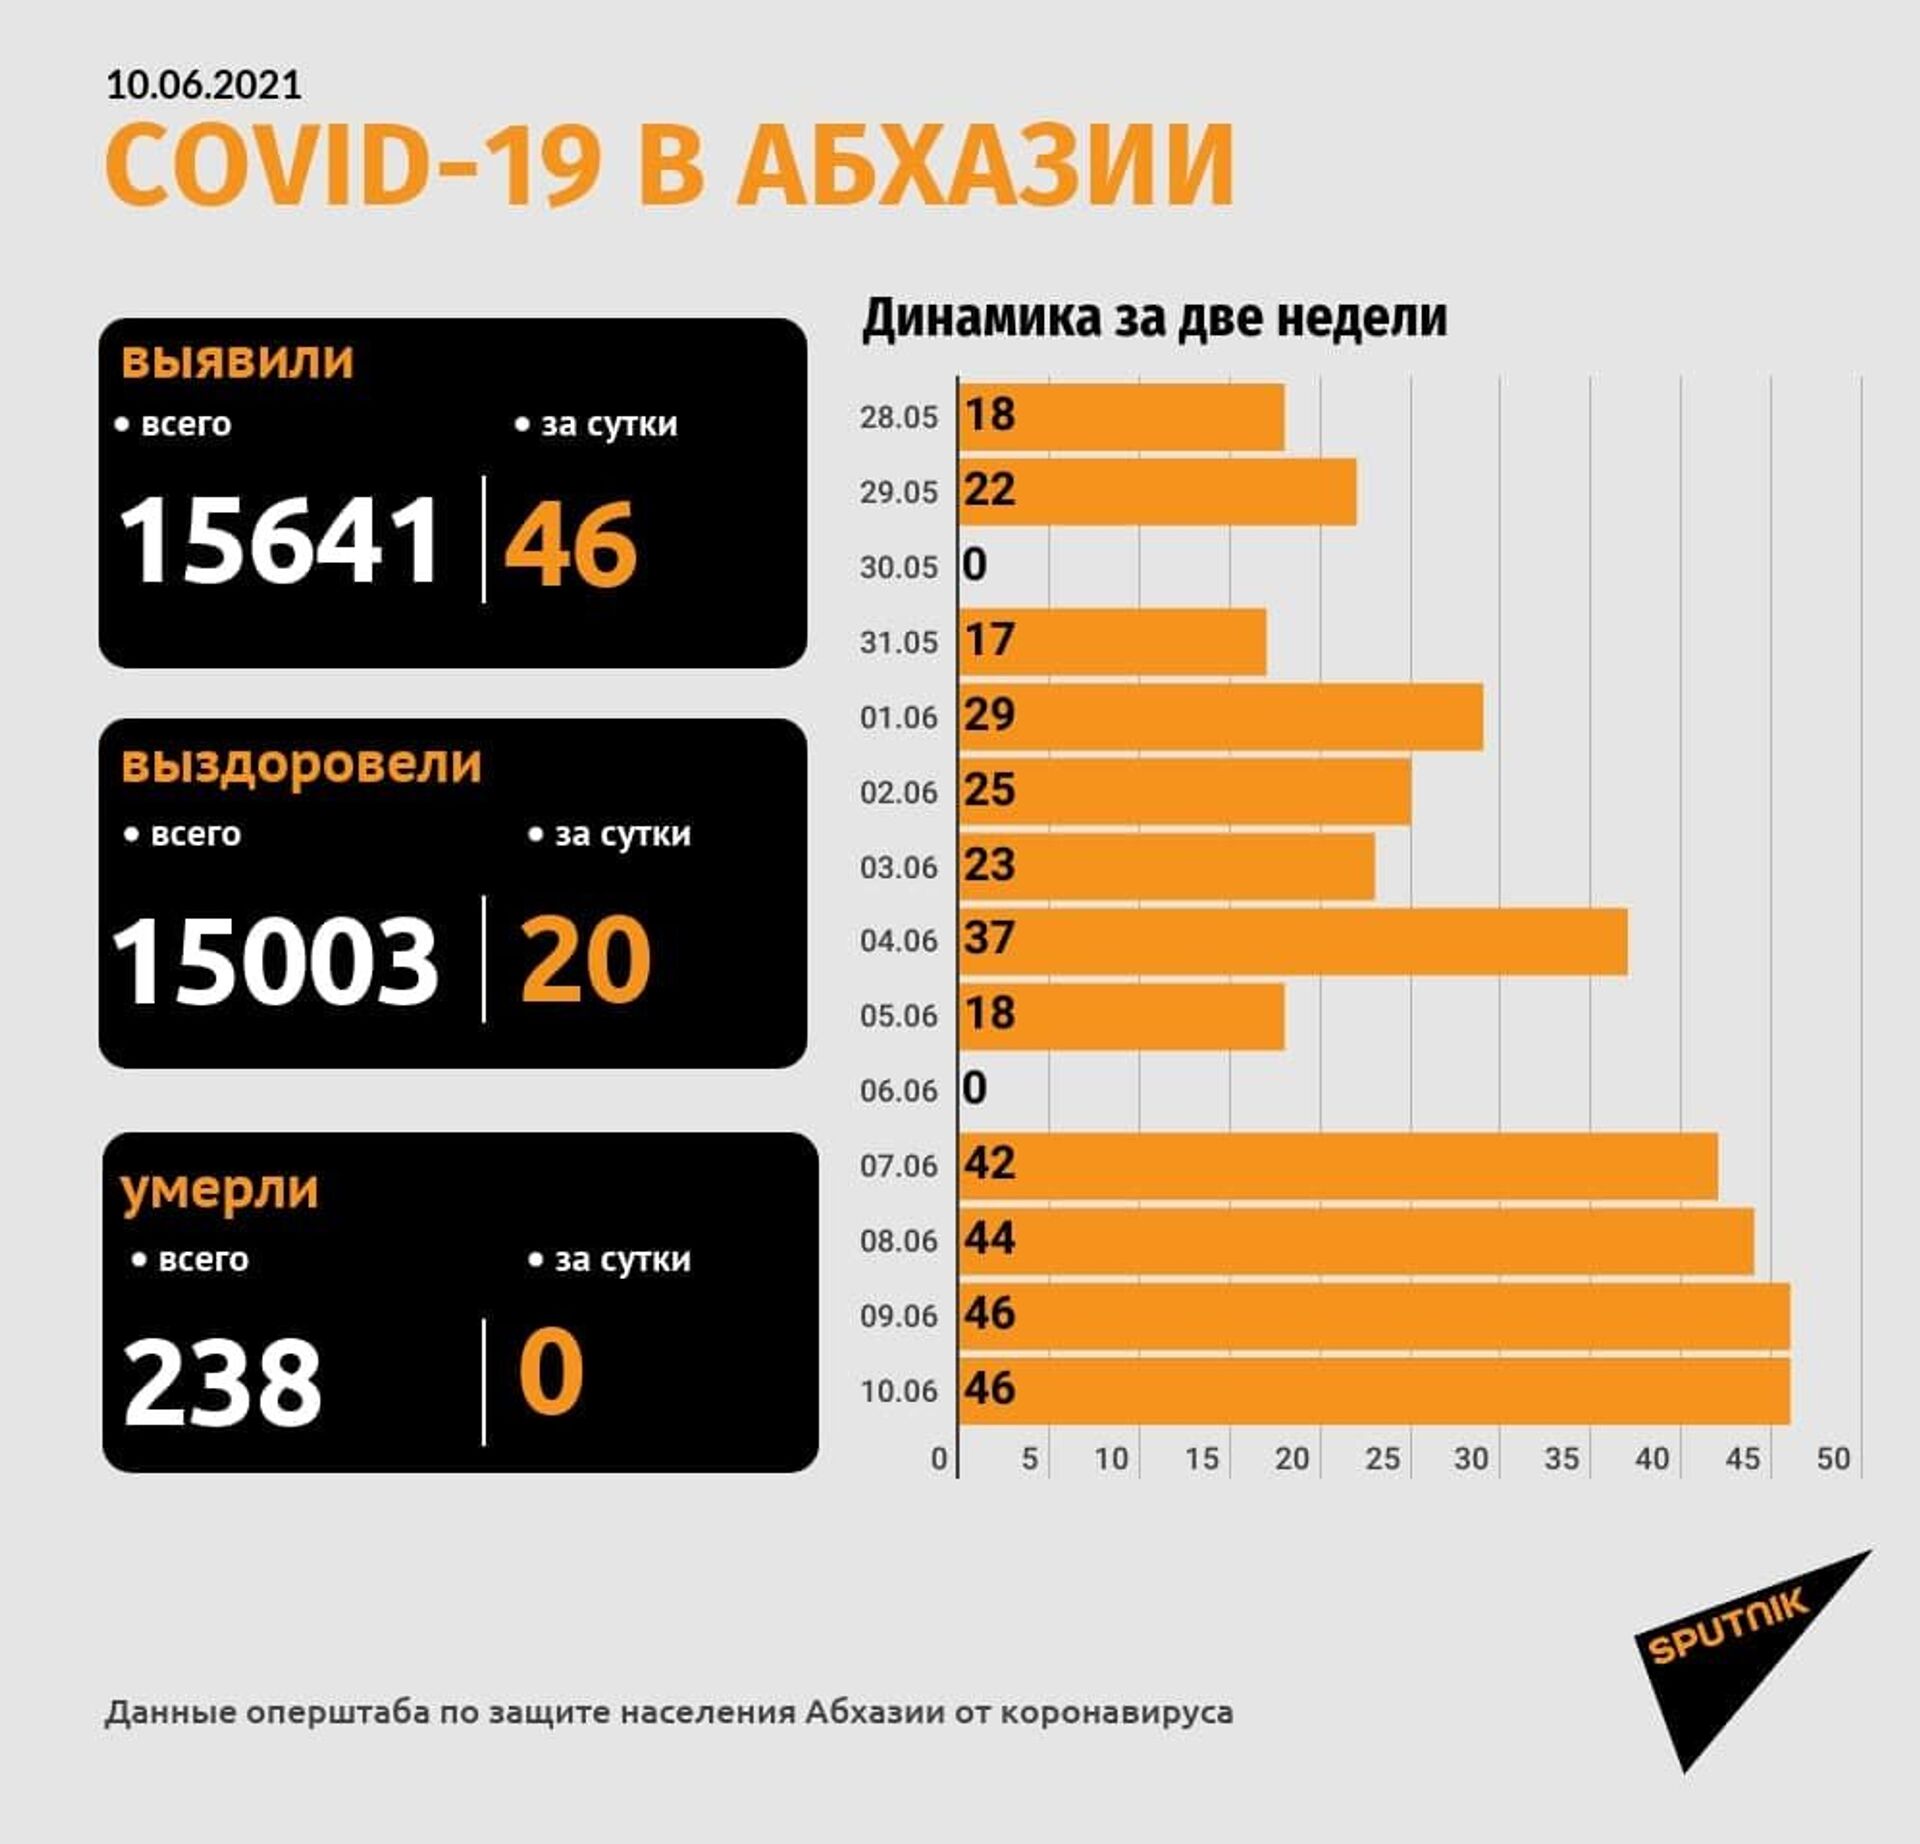 Диагноз коронавирус подтвержден еще у 46 человек в Абхазии  - Sputnik Абхазия, 1920, 10.06.2021